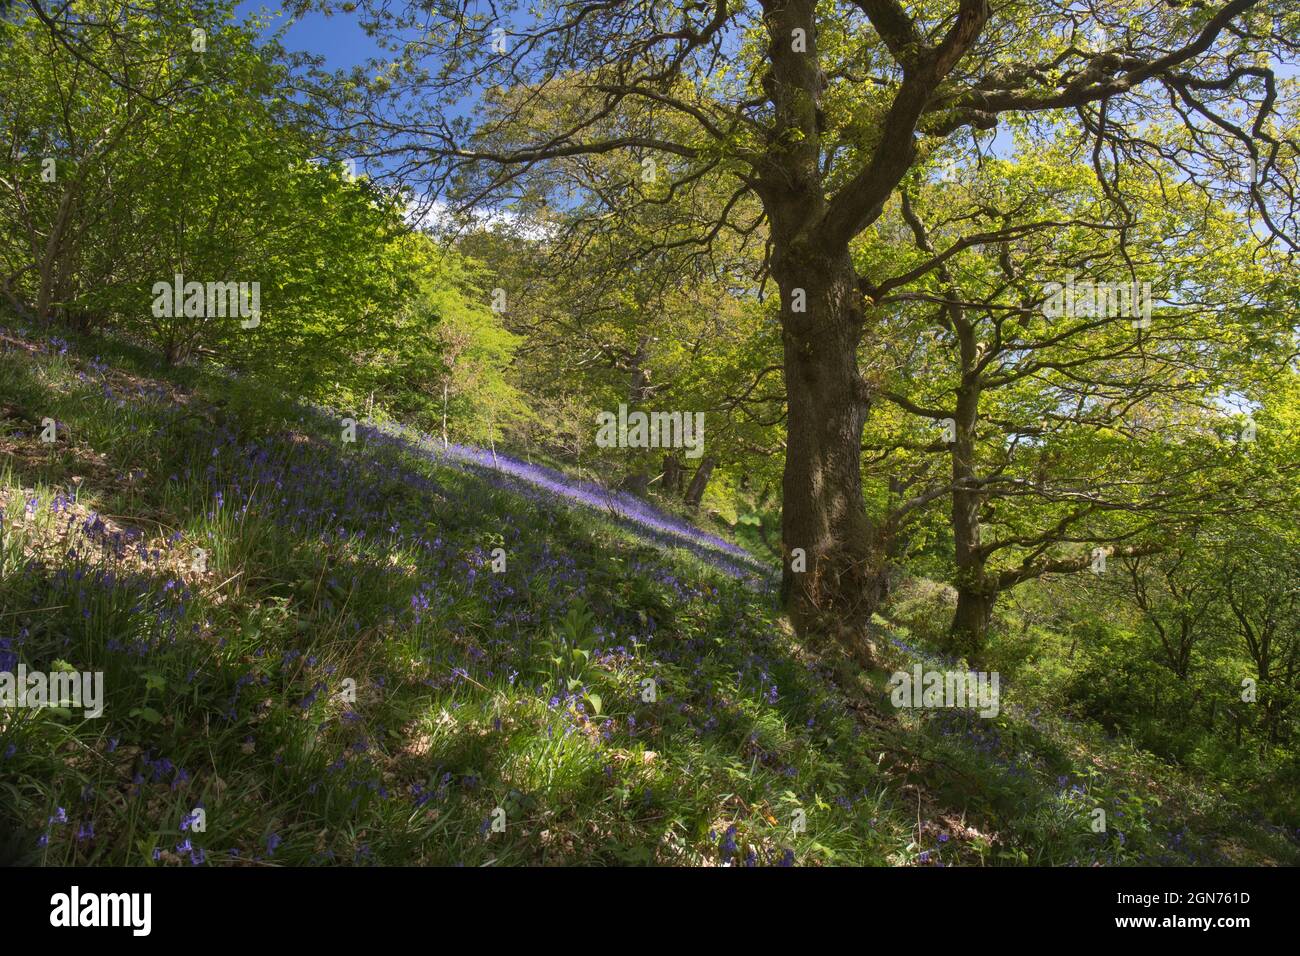 Bluebells (Hyacinthoides non scripta) fioritura in un bosco di querce. Powys, Galles. Maggio. Foto Stock